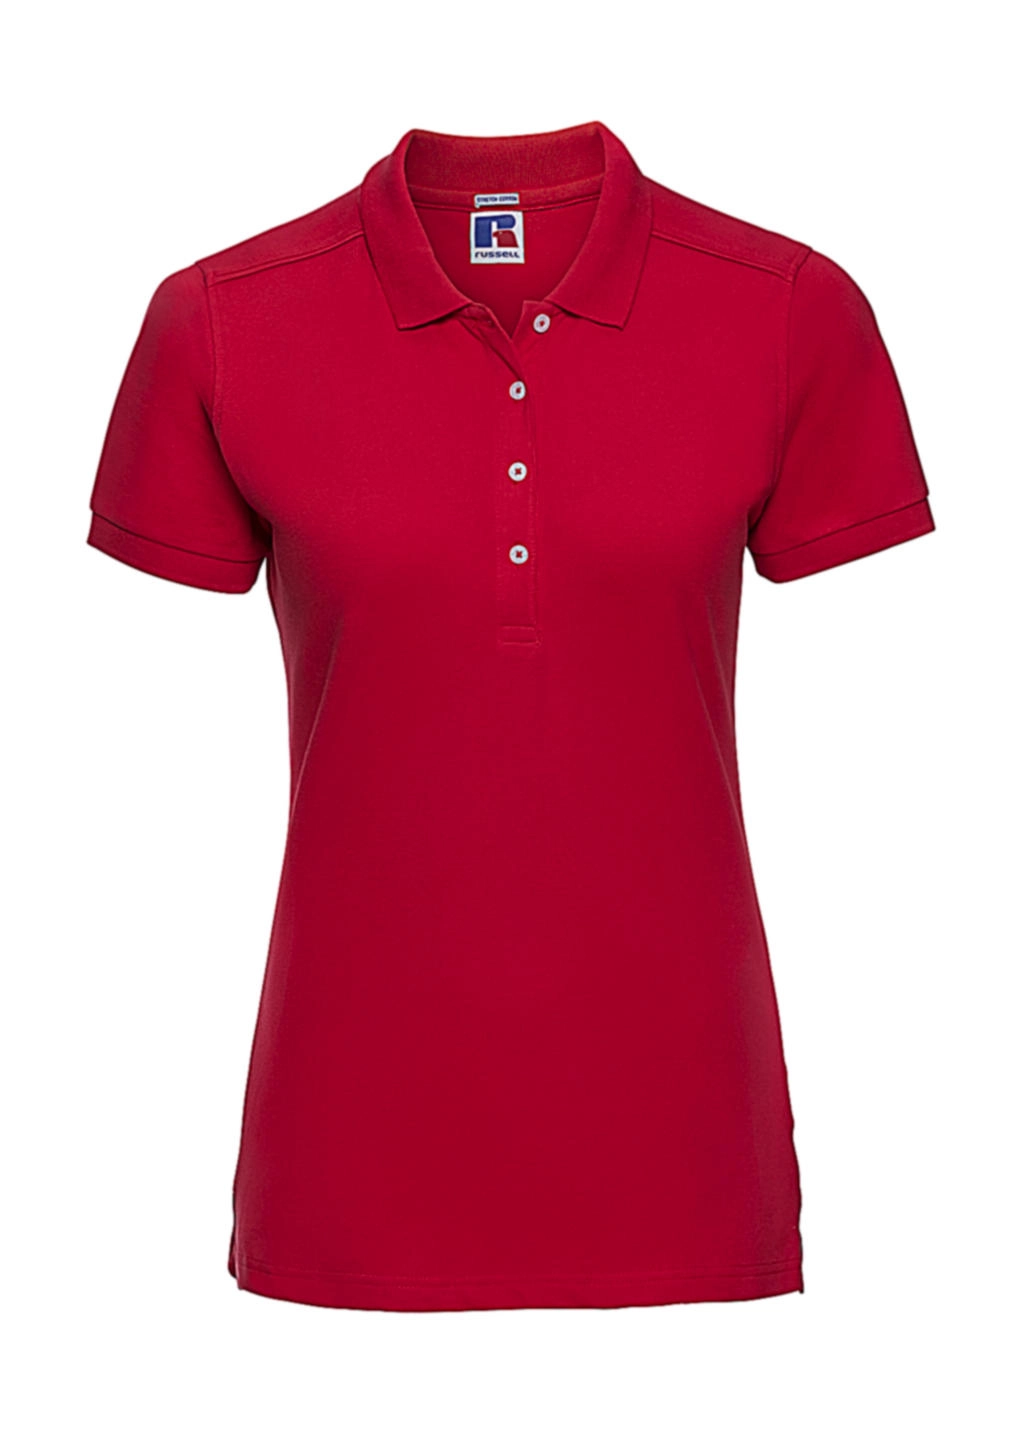 Ladies` Fitted Stretch Polo zum Besticken und Bedrucken in der Farbe Classic Red mit Ihren Logo, Schriftzug oder Motiv.